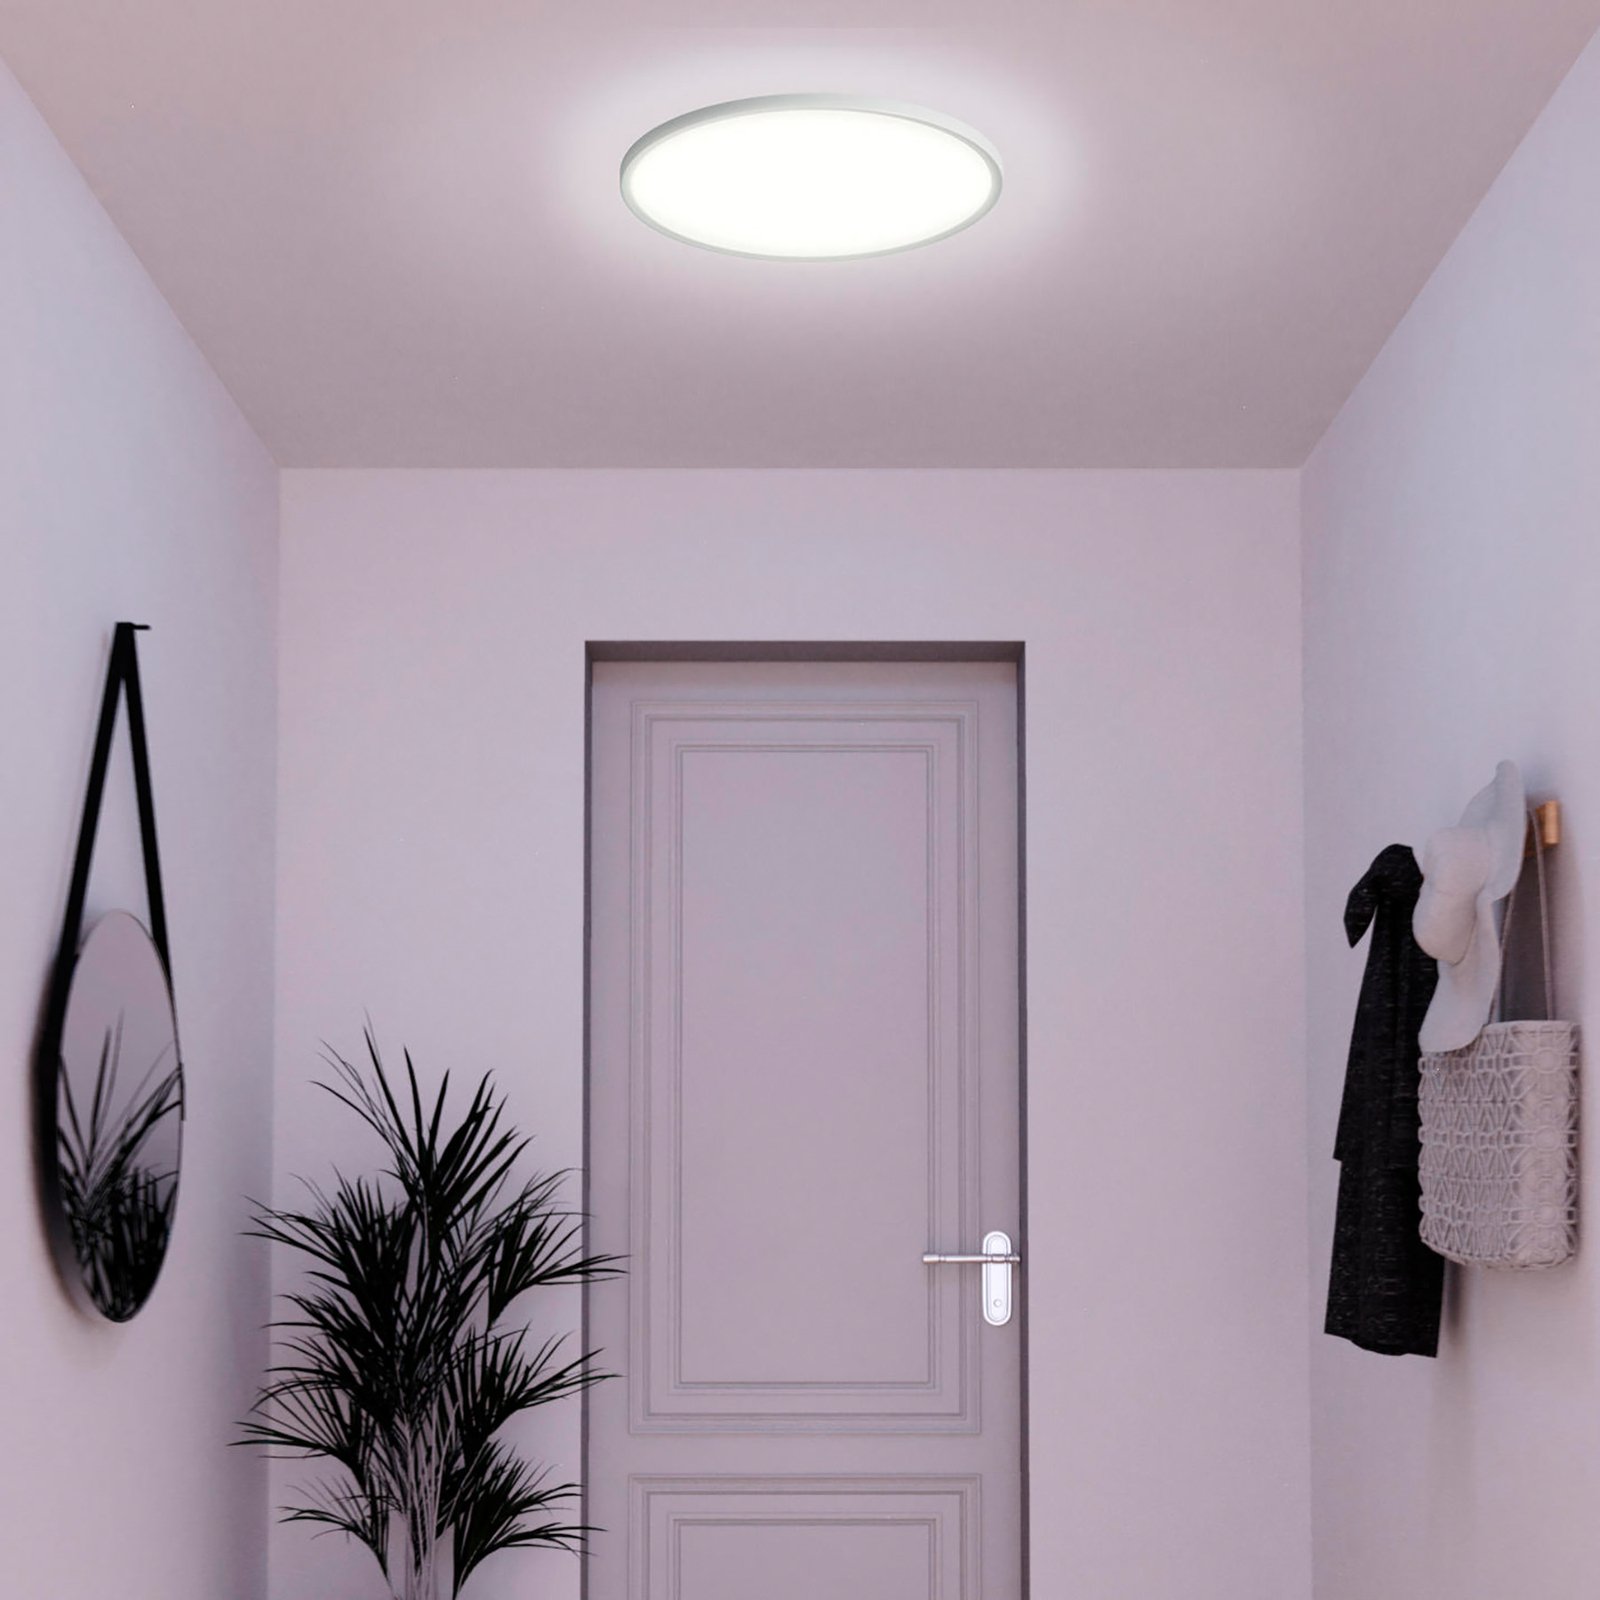 Müller Licht tint Smart LED ceiling light Amela, Ø 42 cm